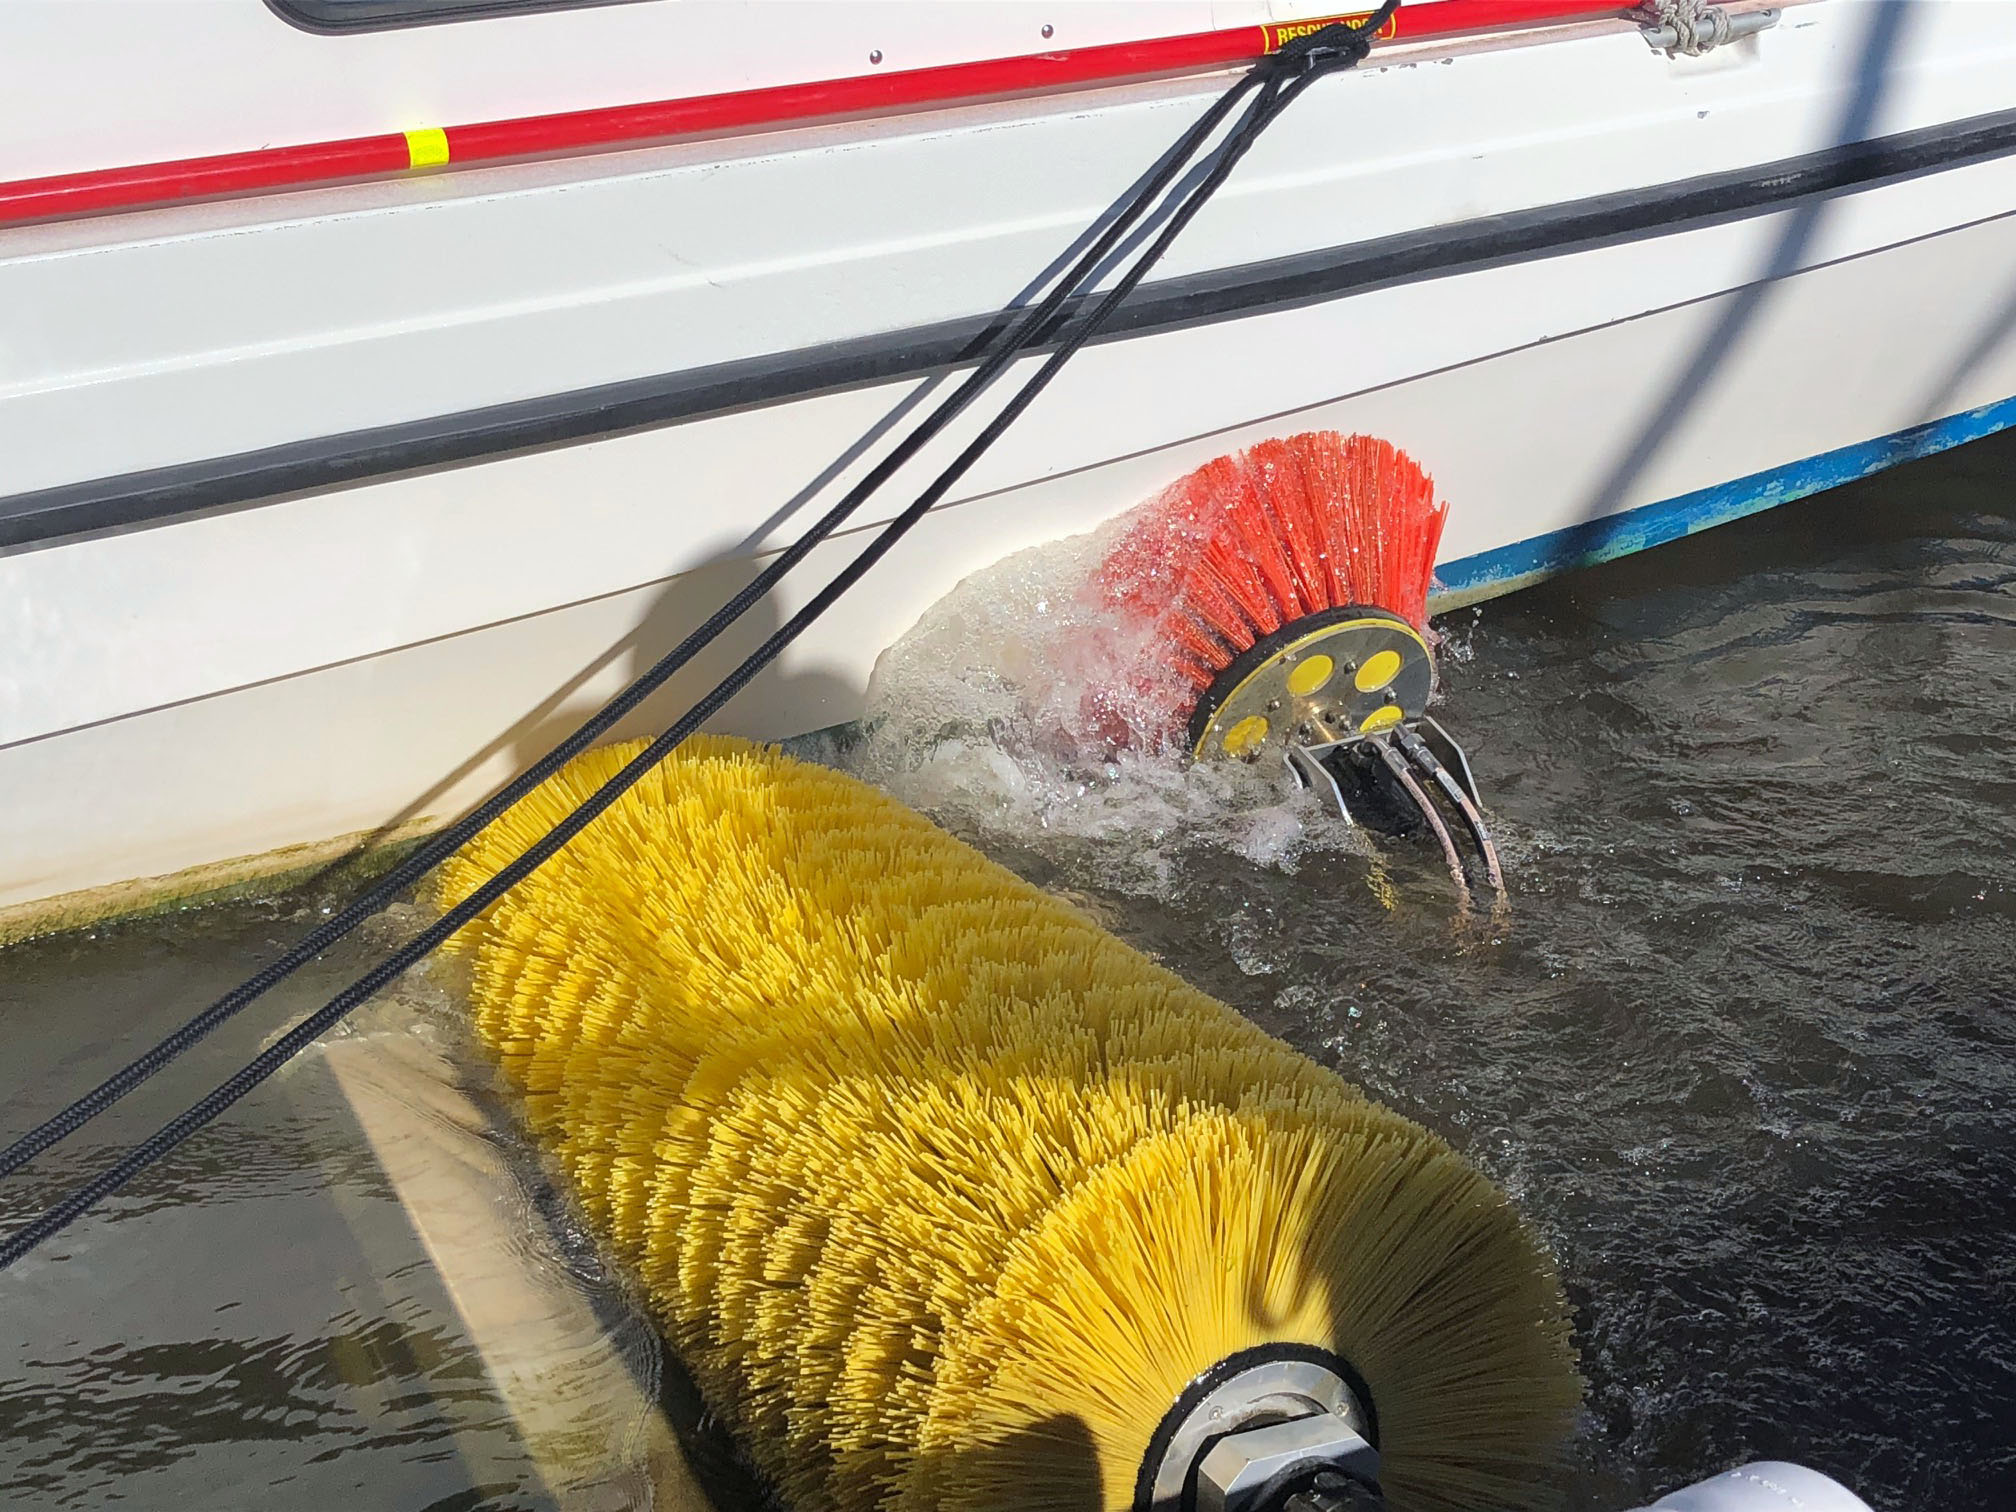 En stor gul borste och en mindre röd borste, tvättar underredet på en båt.